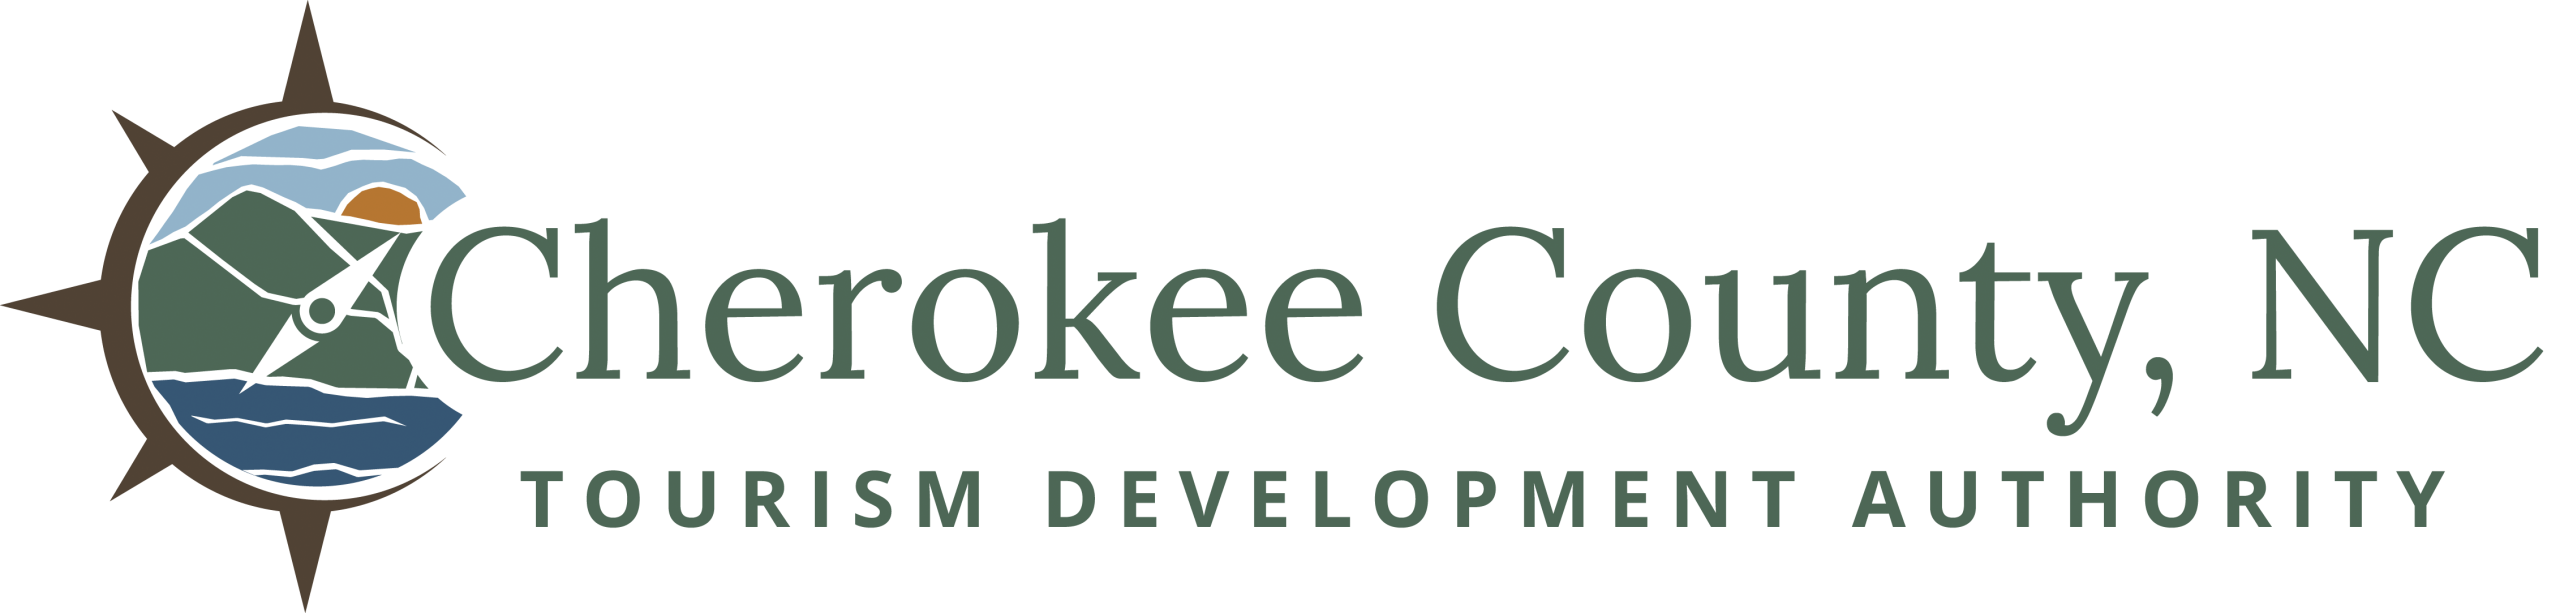 Cherokee County Tourism Development Authority